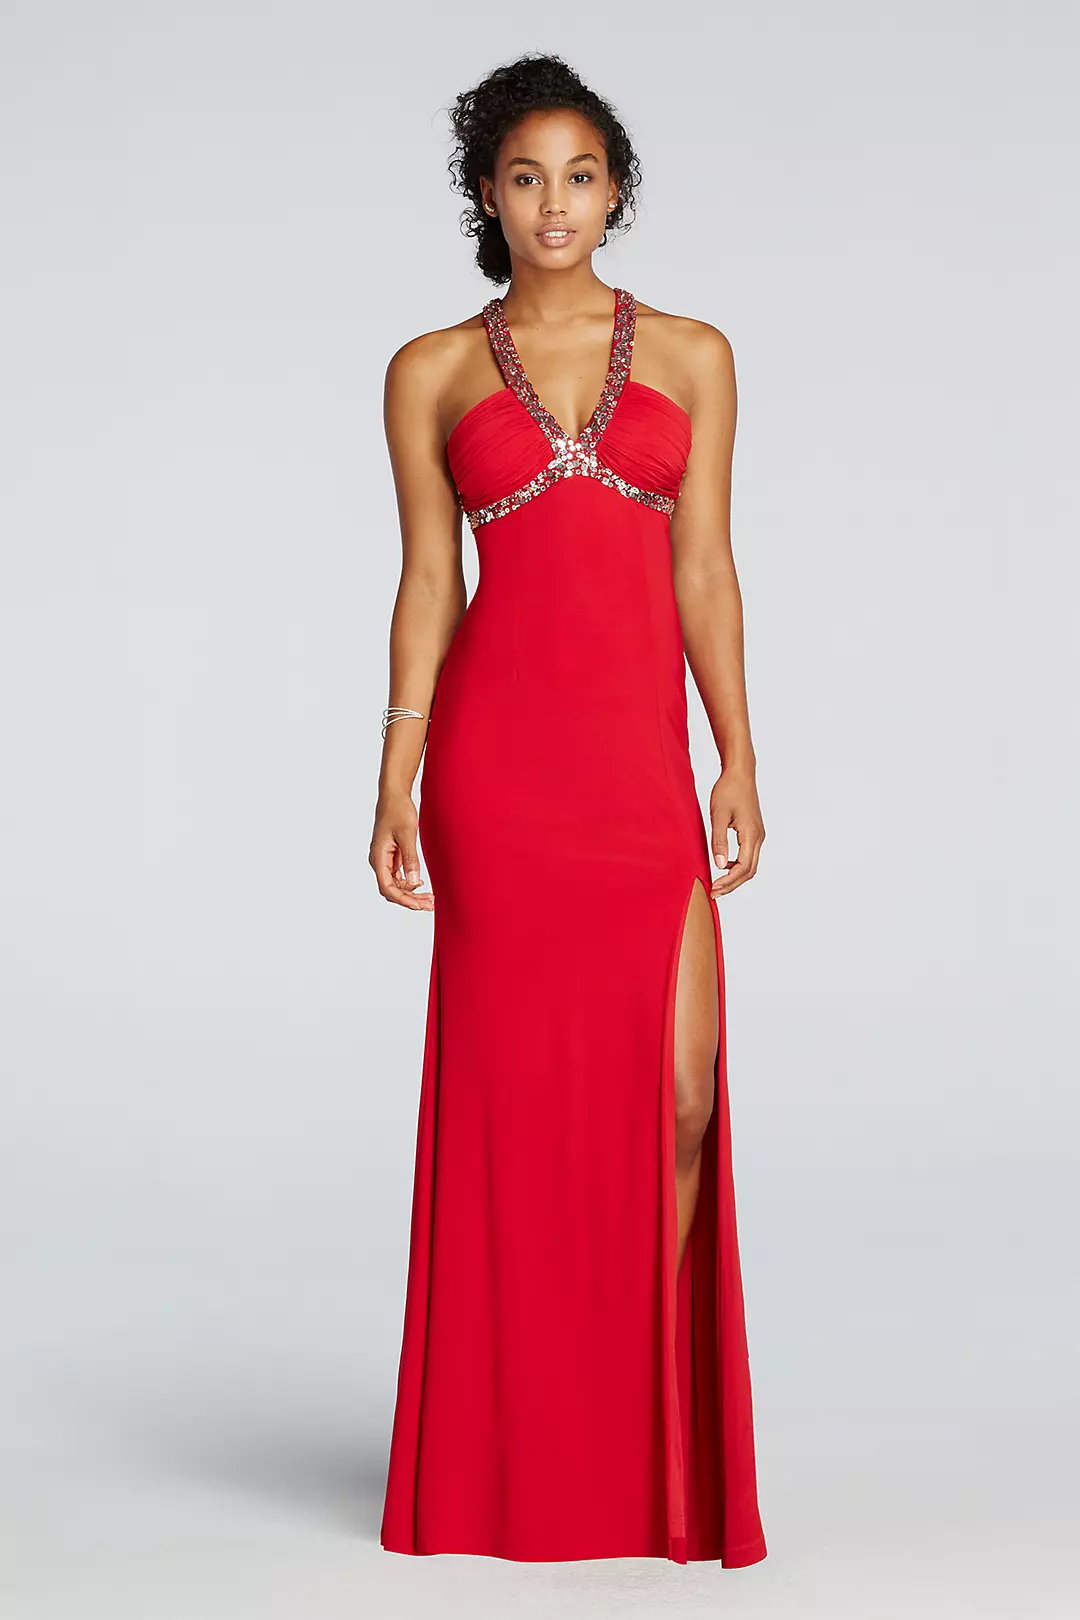 V-Plunge Neckline Prom Dress with Side Slit Skirt Image